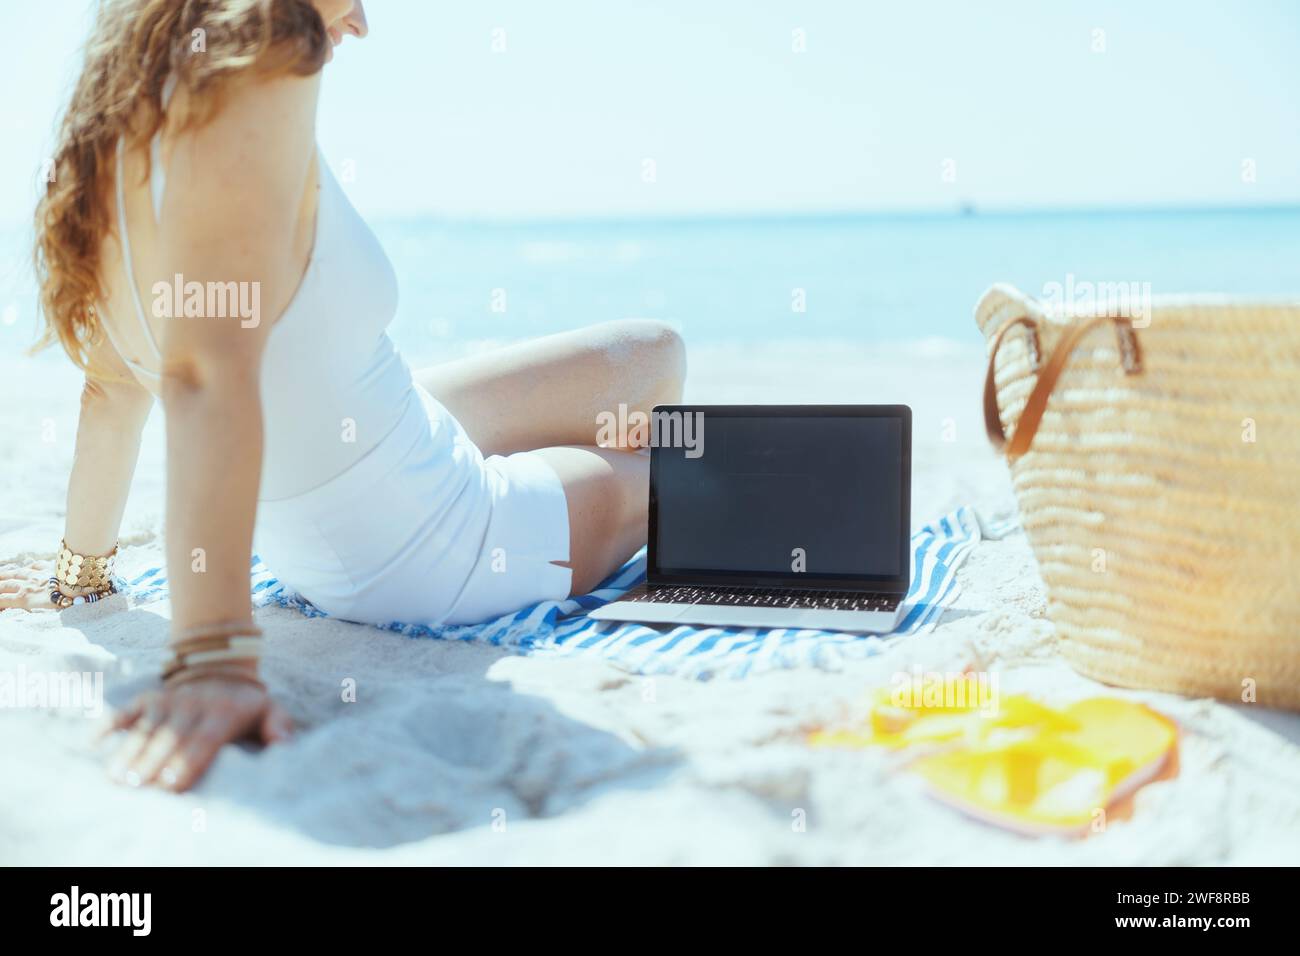 Entspannte, stilvolle Frau am Meer mit Strohtasche, leerem Laptop-Bildschirm und gestreiftem Handtuch. Stockfoto